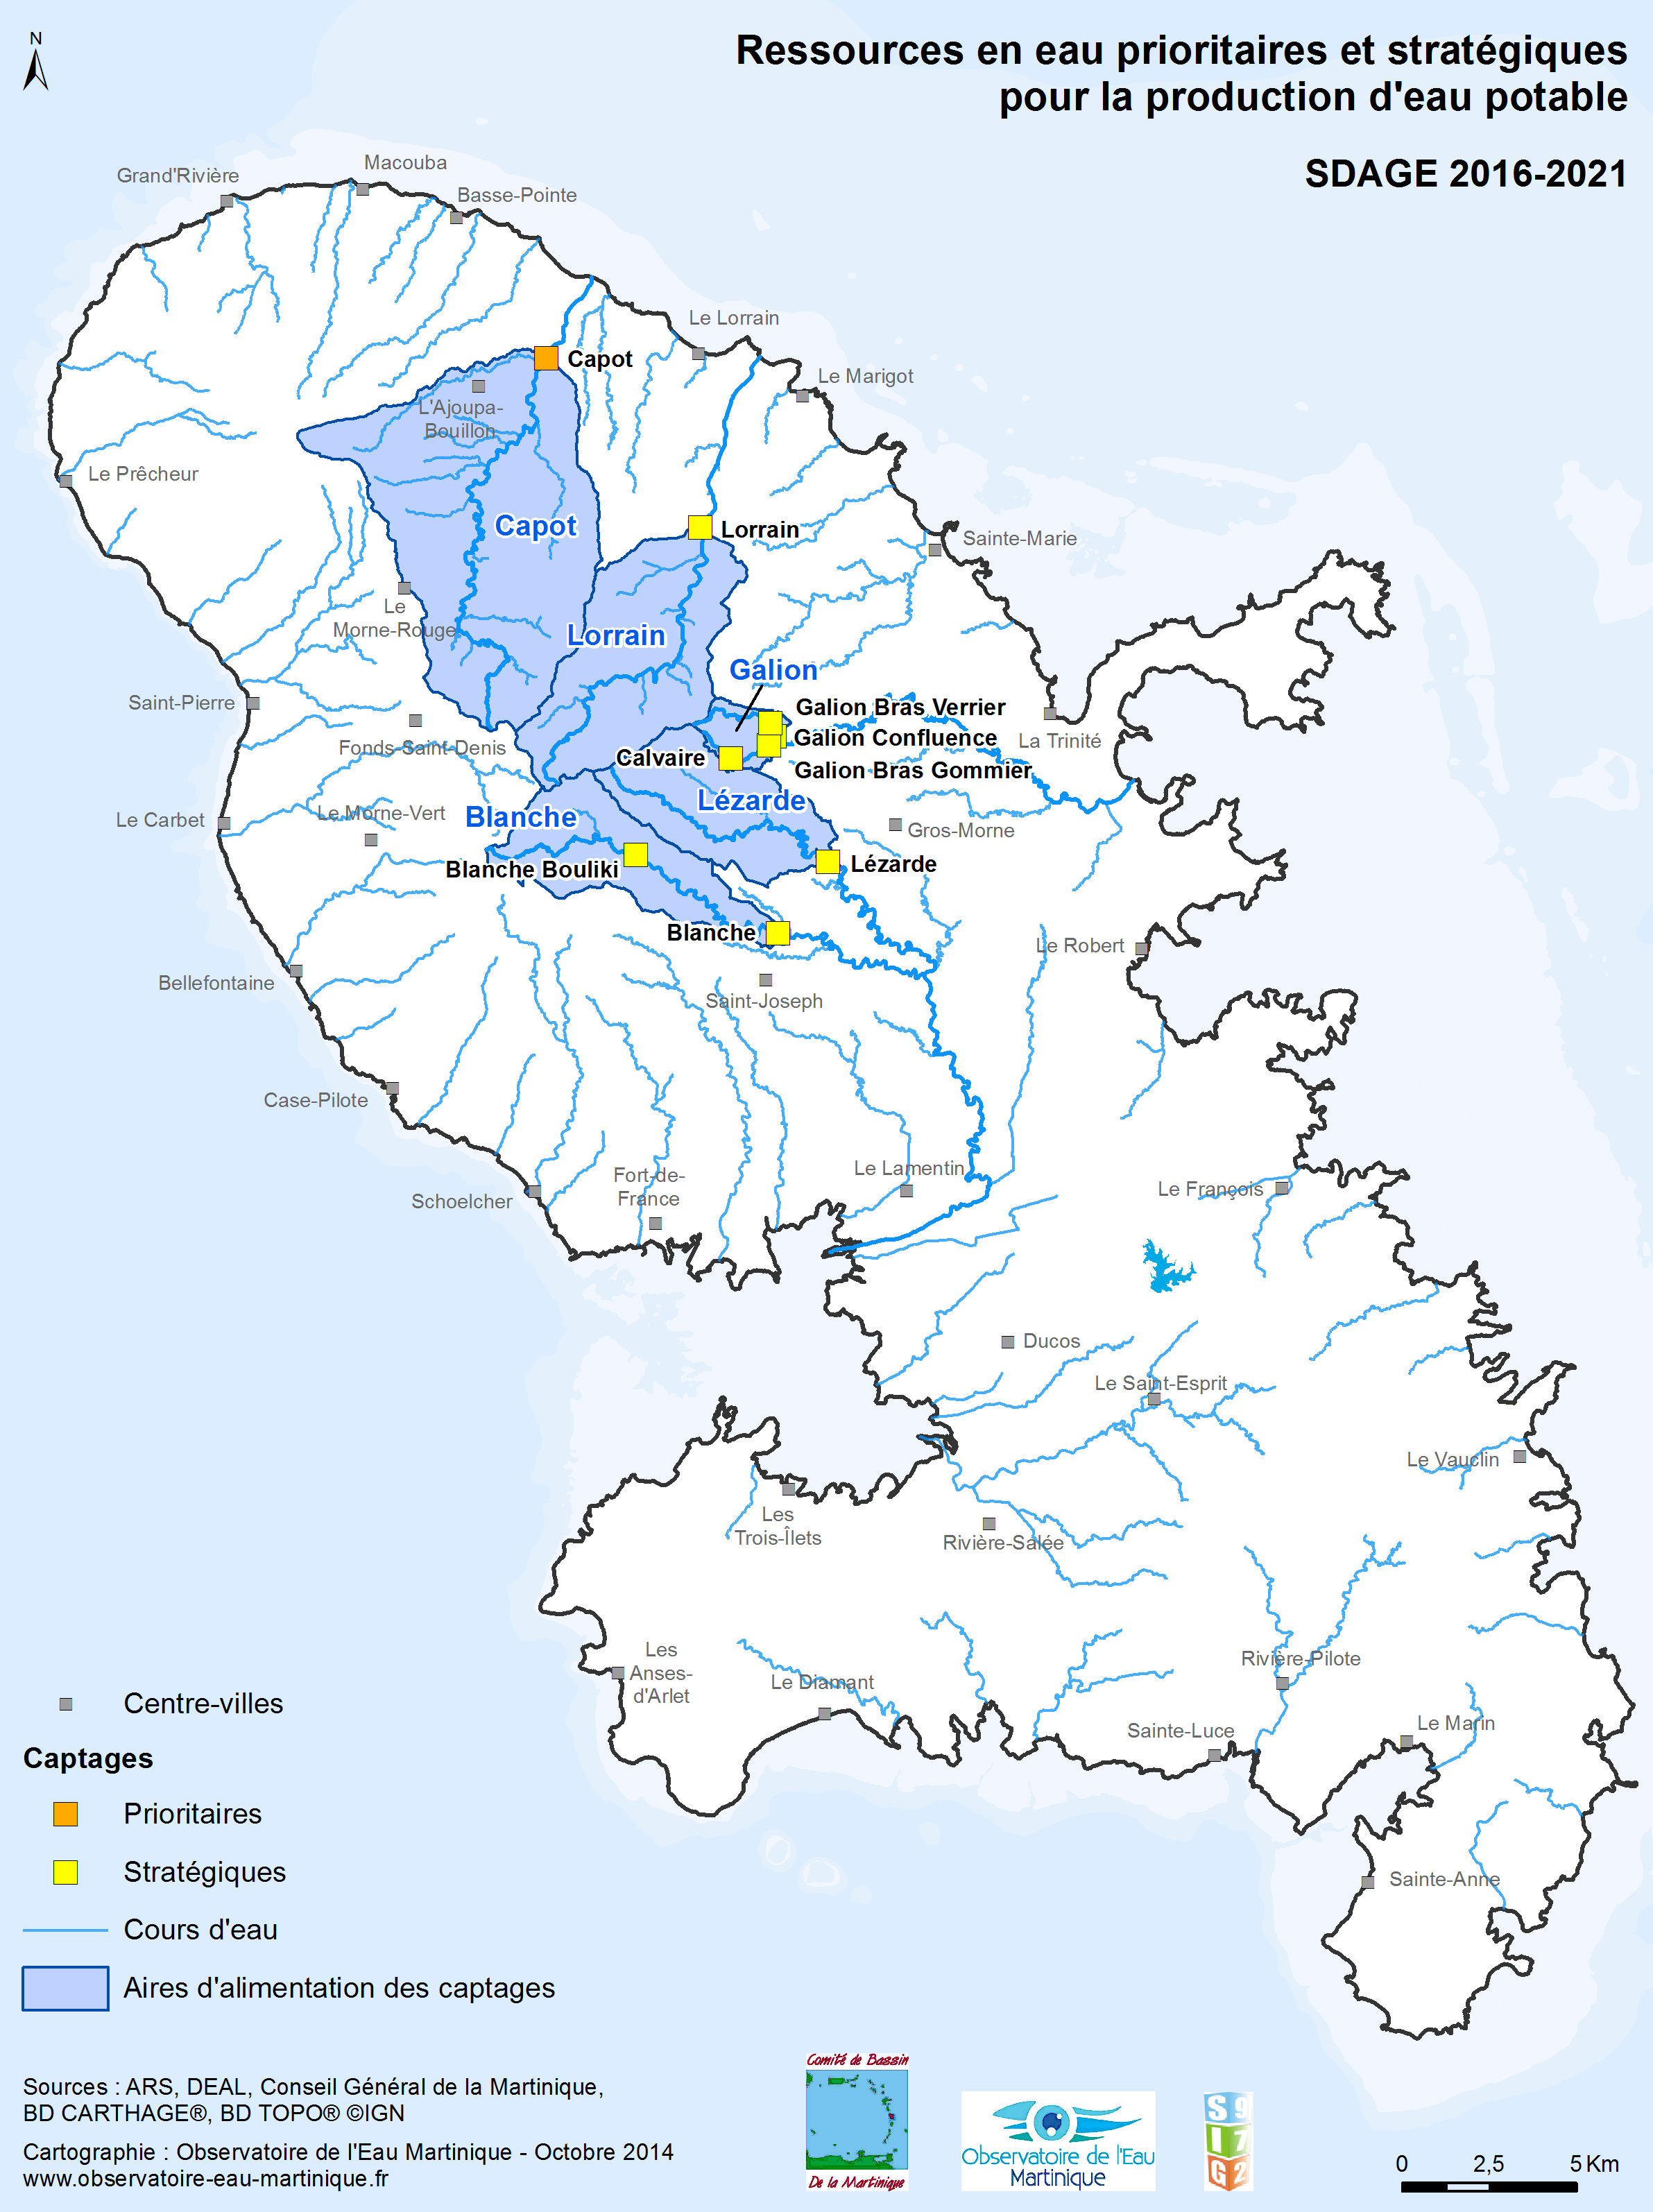 SDAGE 2016-2021 - Ressources en eau prioritaires et stratégiques pour la production d'eau potable